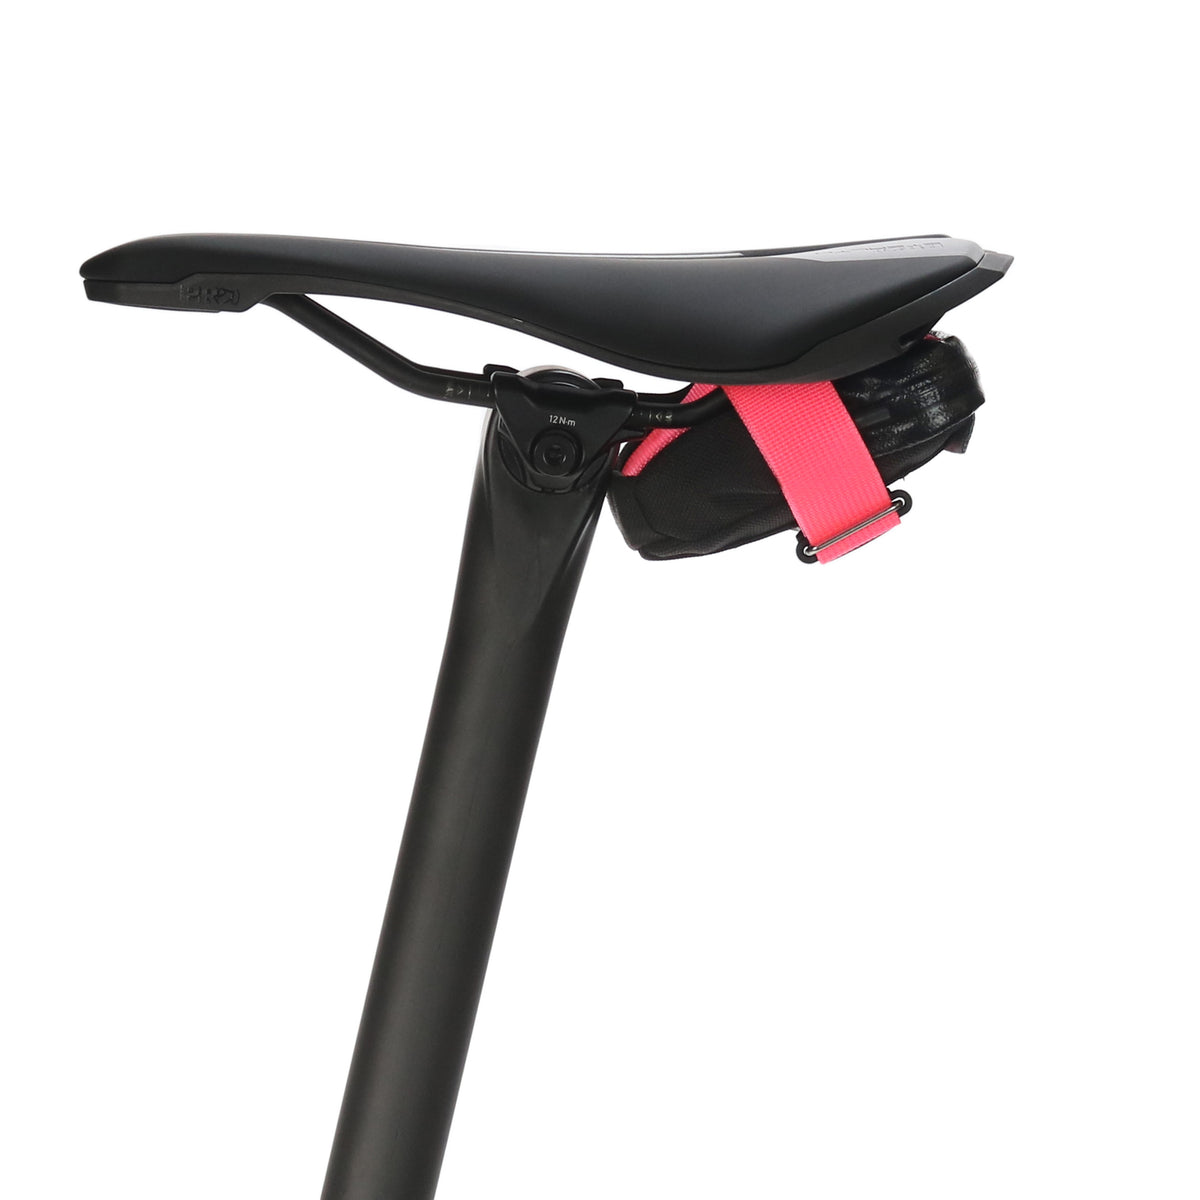 skingrowsback plan b nano minimal low profile cycling saddle bag neon pink distinction